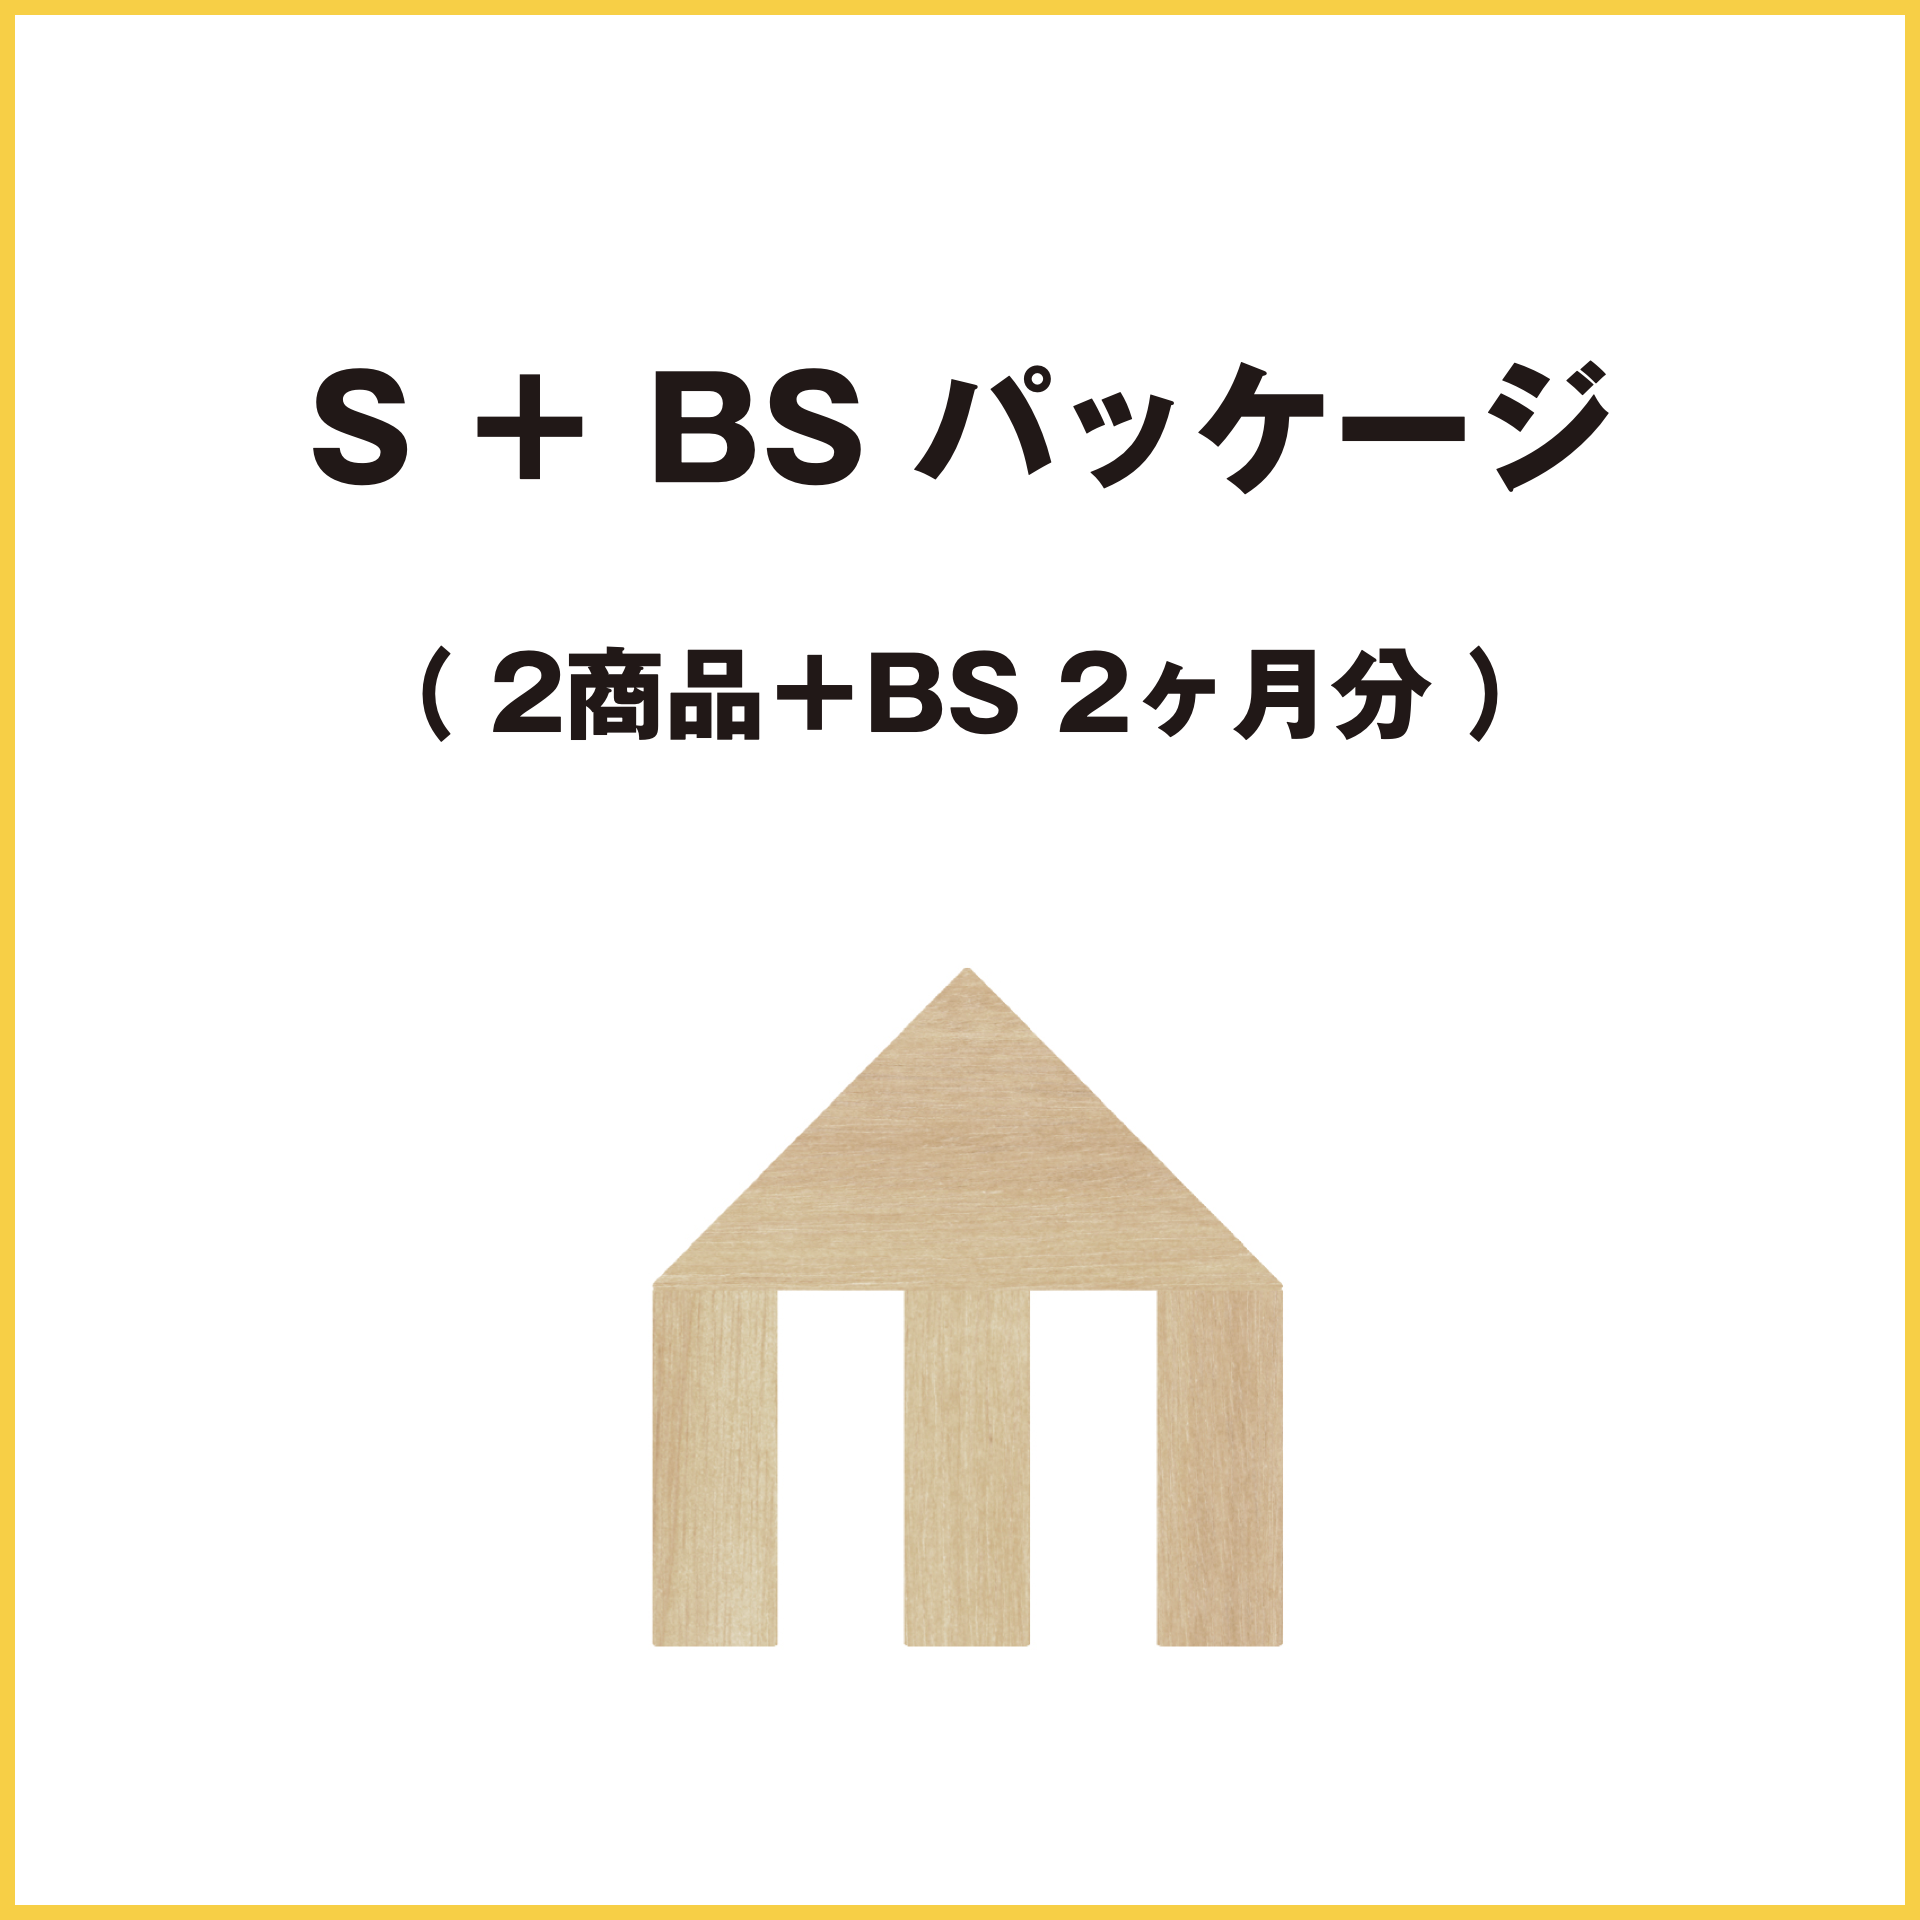 S + BS パッケージ